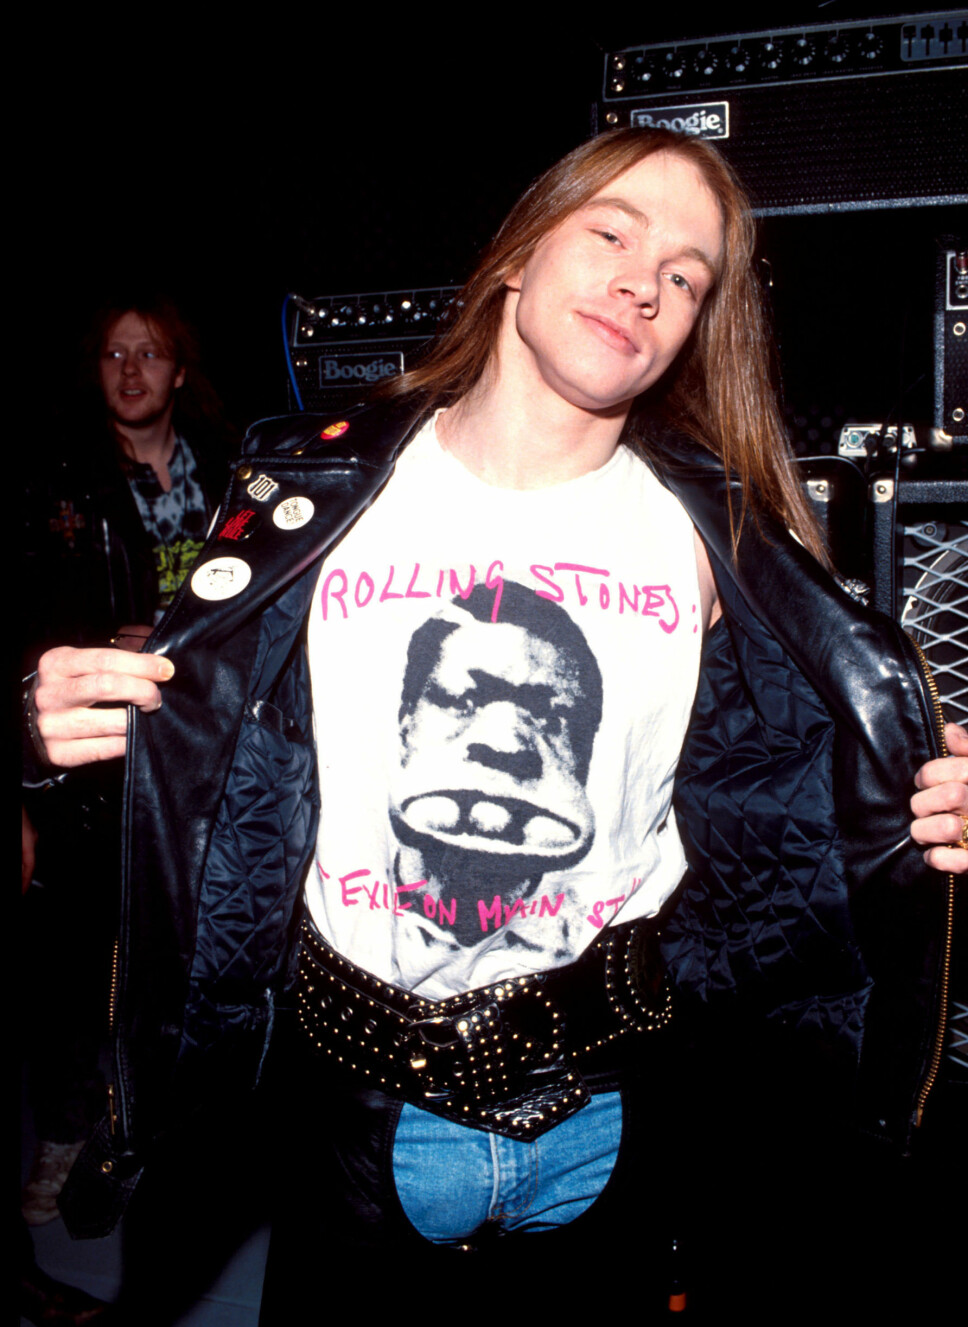 ROLLING STONES PÅ BRYSTET: Guns N' Roses-vokalist Axl Rose reklamerer for rockerkollegaene Rolling Stone på t-skjorten, fra omkring 1990.